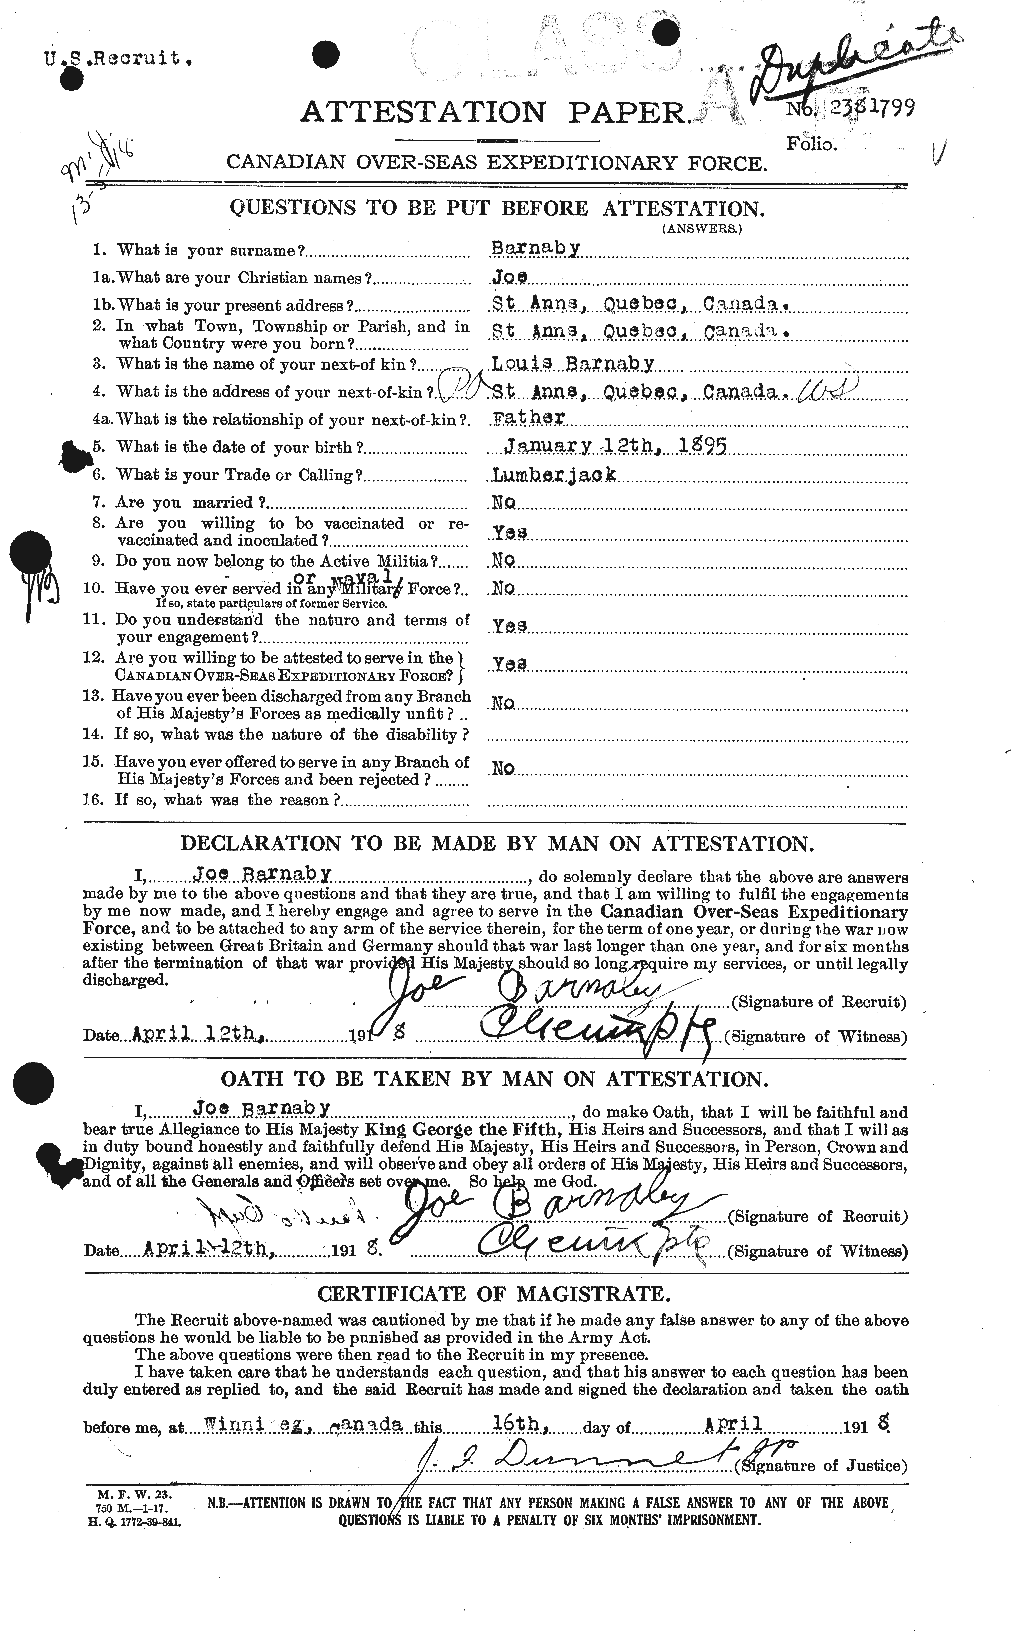 Dossiers du Personnel de la Première Guerre mondiale - CEC 227054a